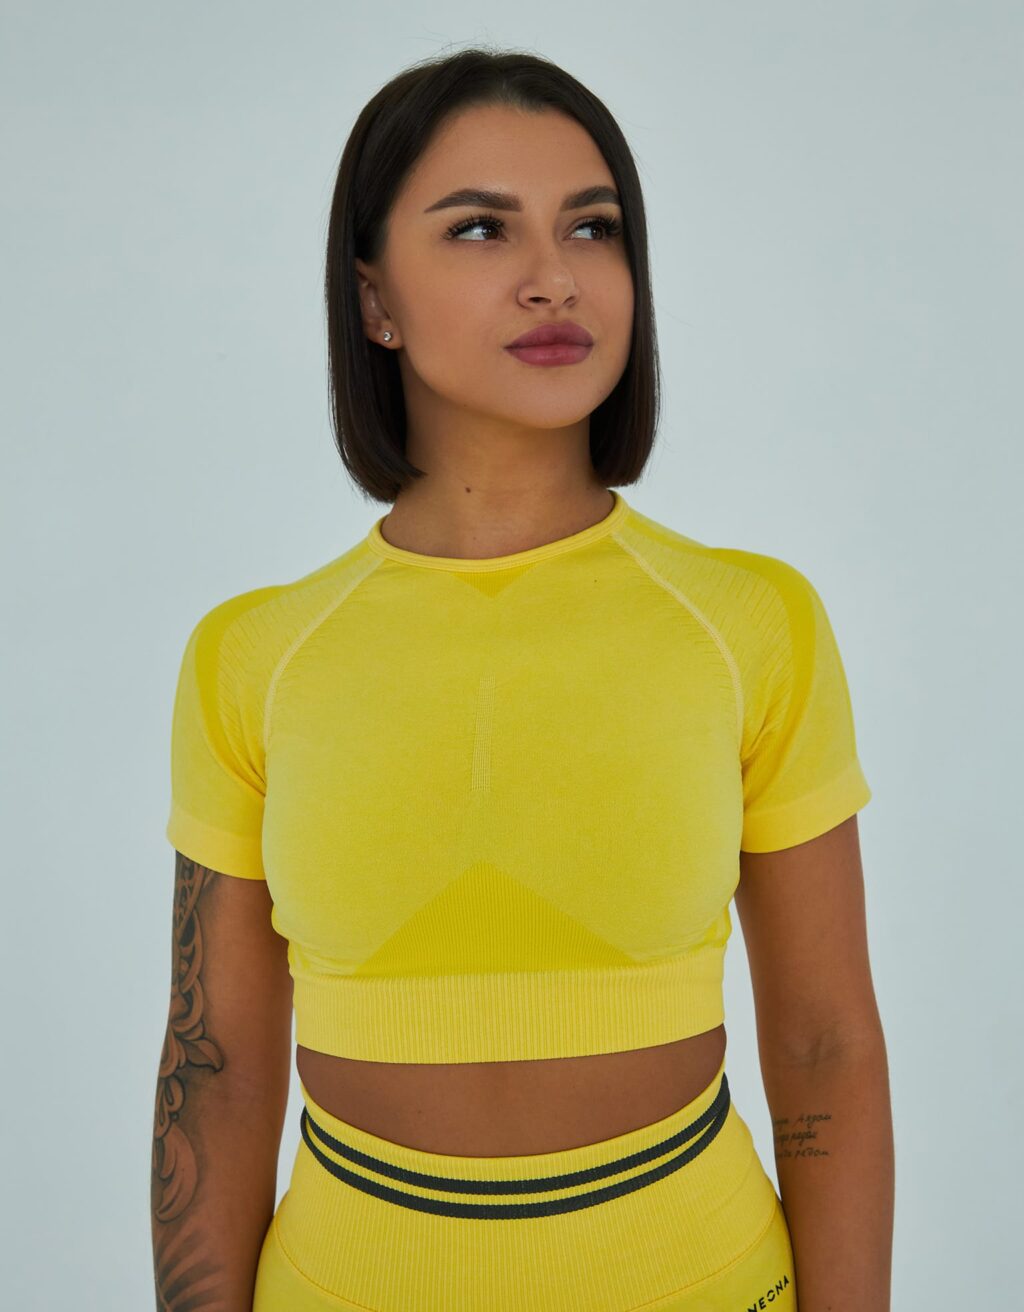 Жёлтая эластичная укороченная футболка, вид спереди.